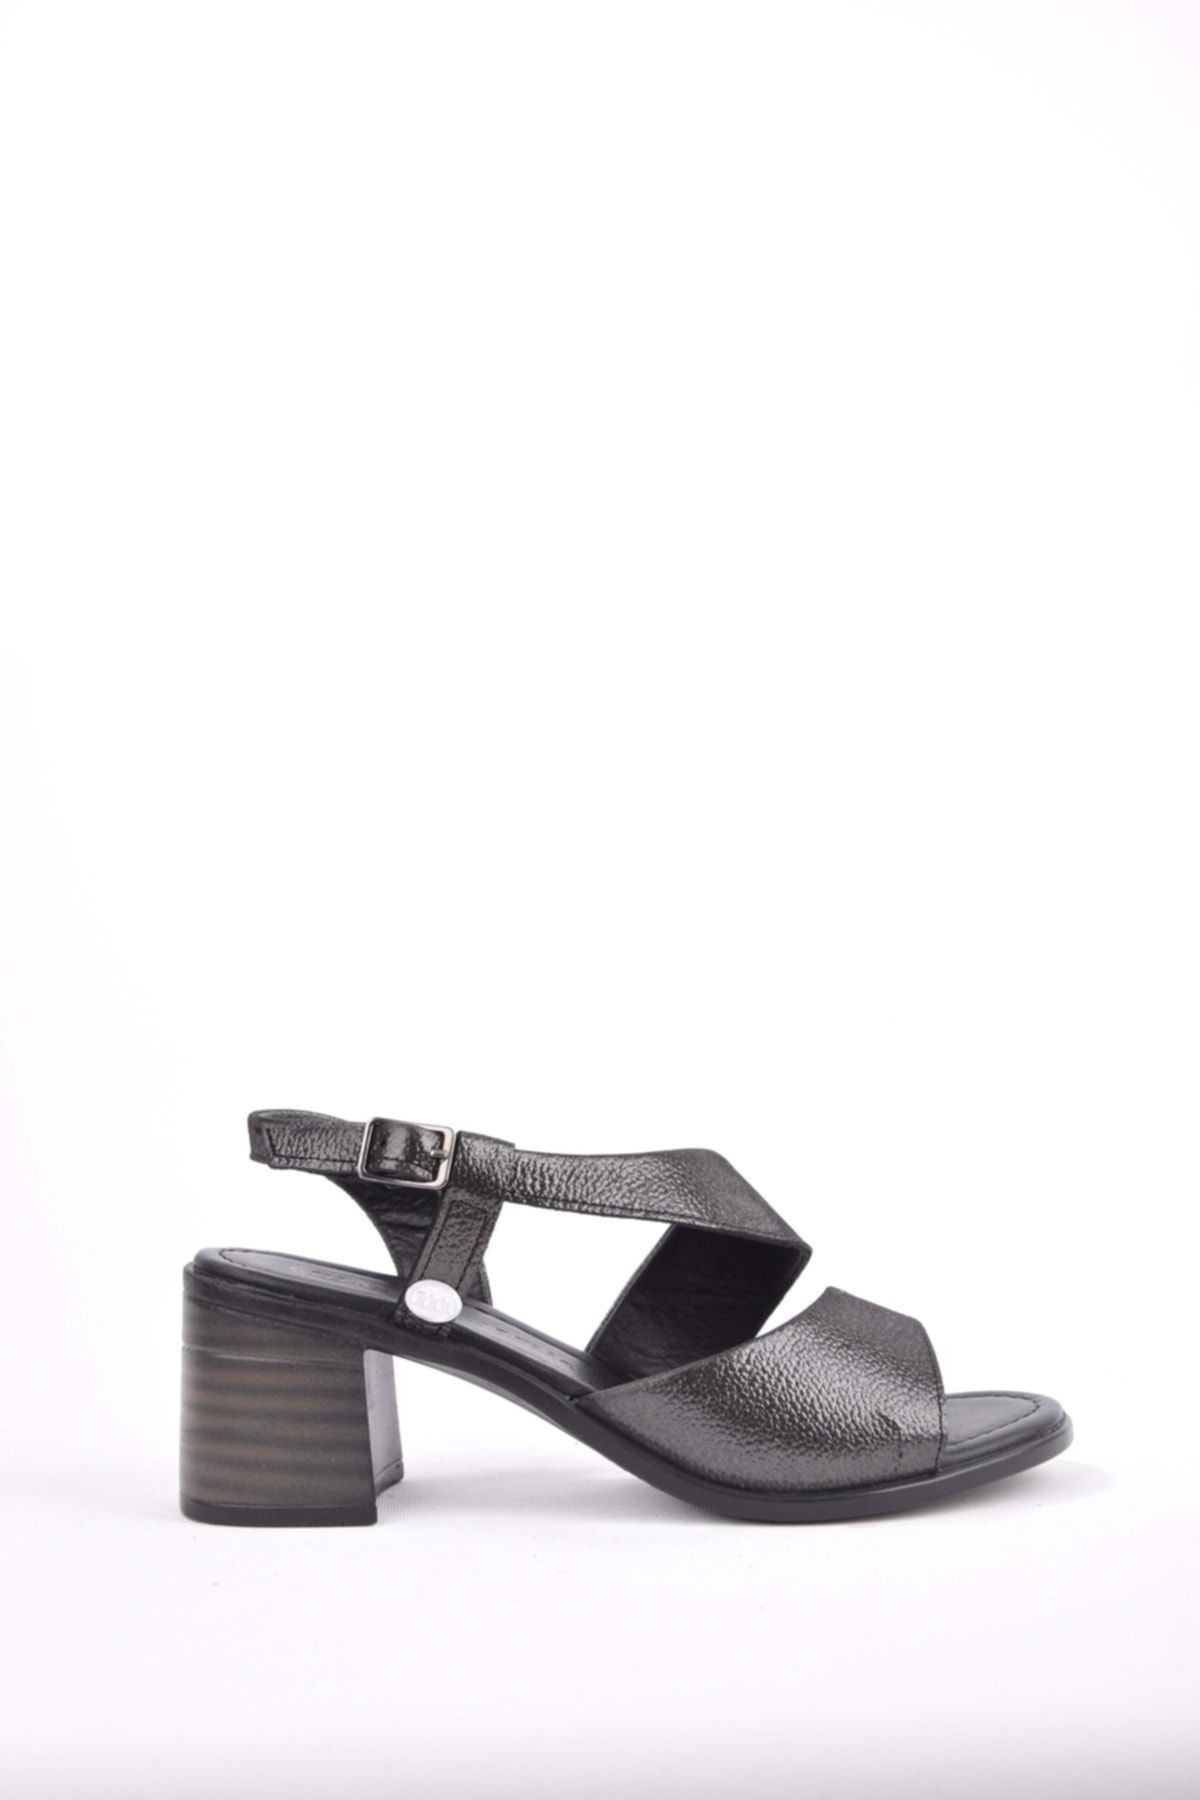 Mammamia D22ys-1130 Kadın Deri Yazlık Sandalet